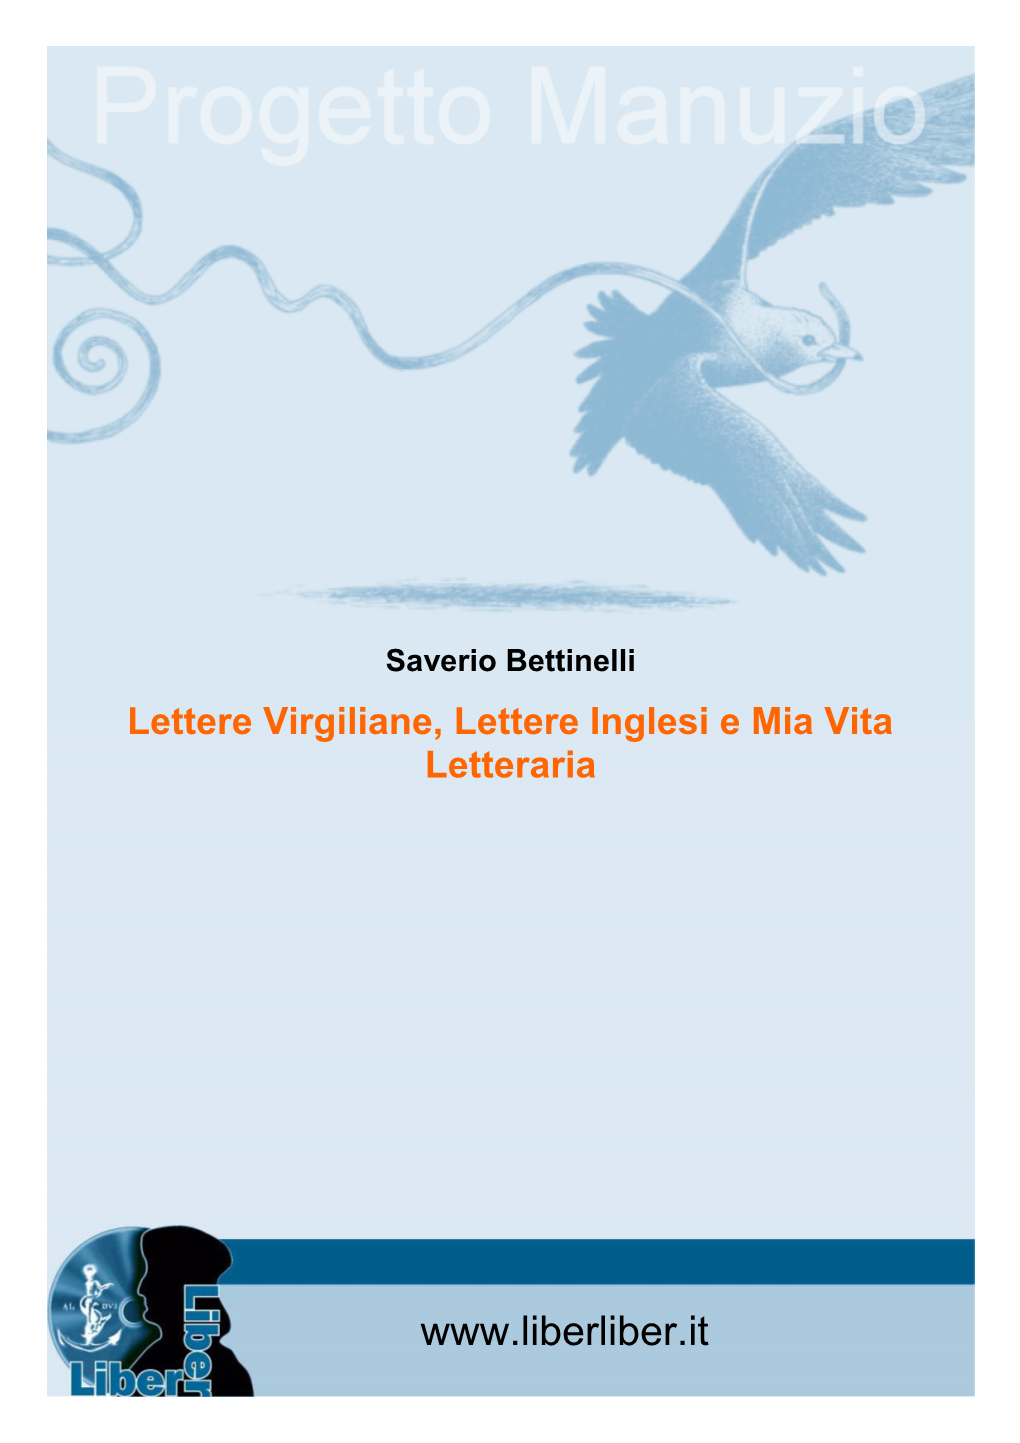 Saverio Bettinelli Lettere Virgiliane, Lettere Inglesi E Mia Vita Letteraria